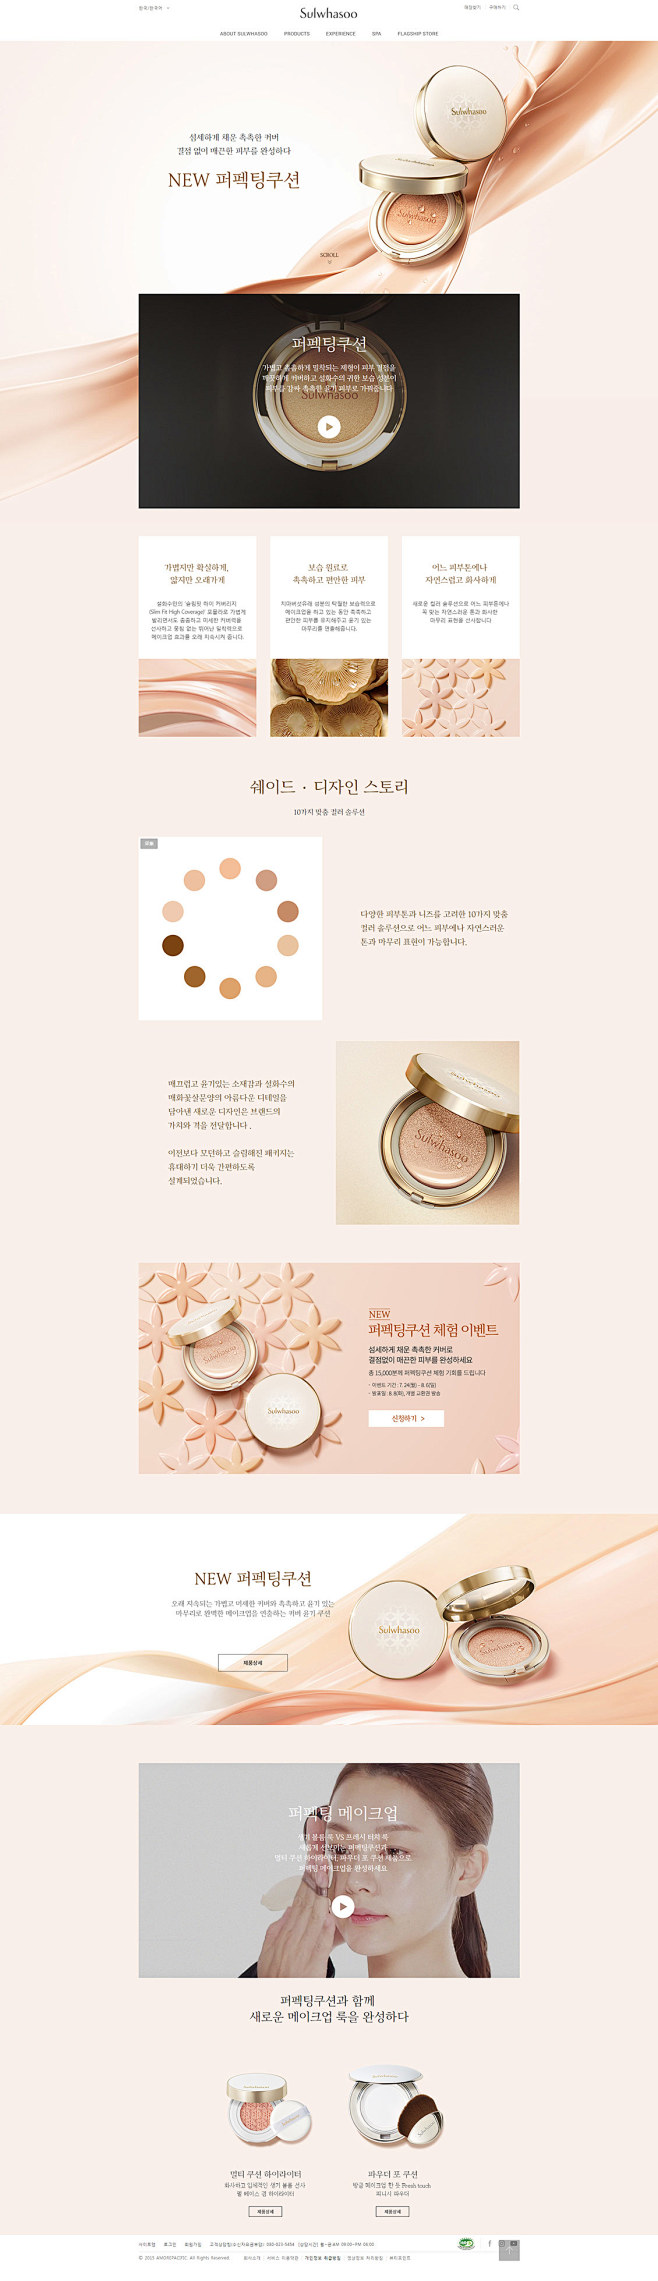 sulwhasoo韩国化妆品专题页面设计...